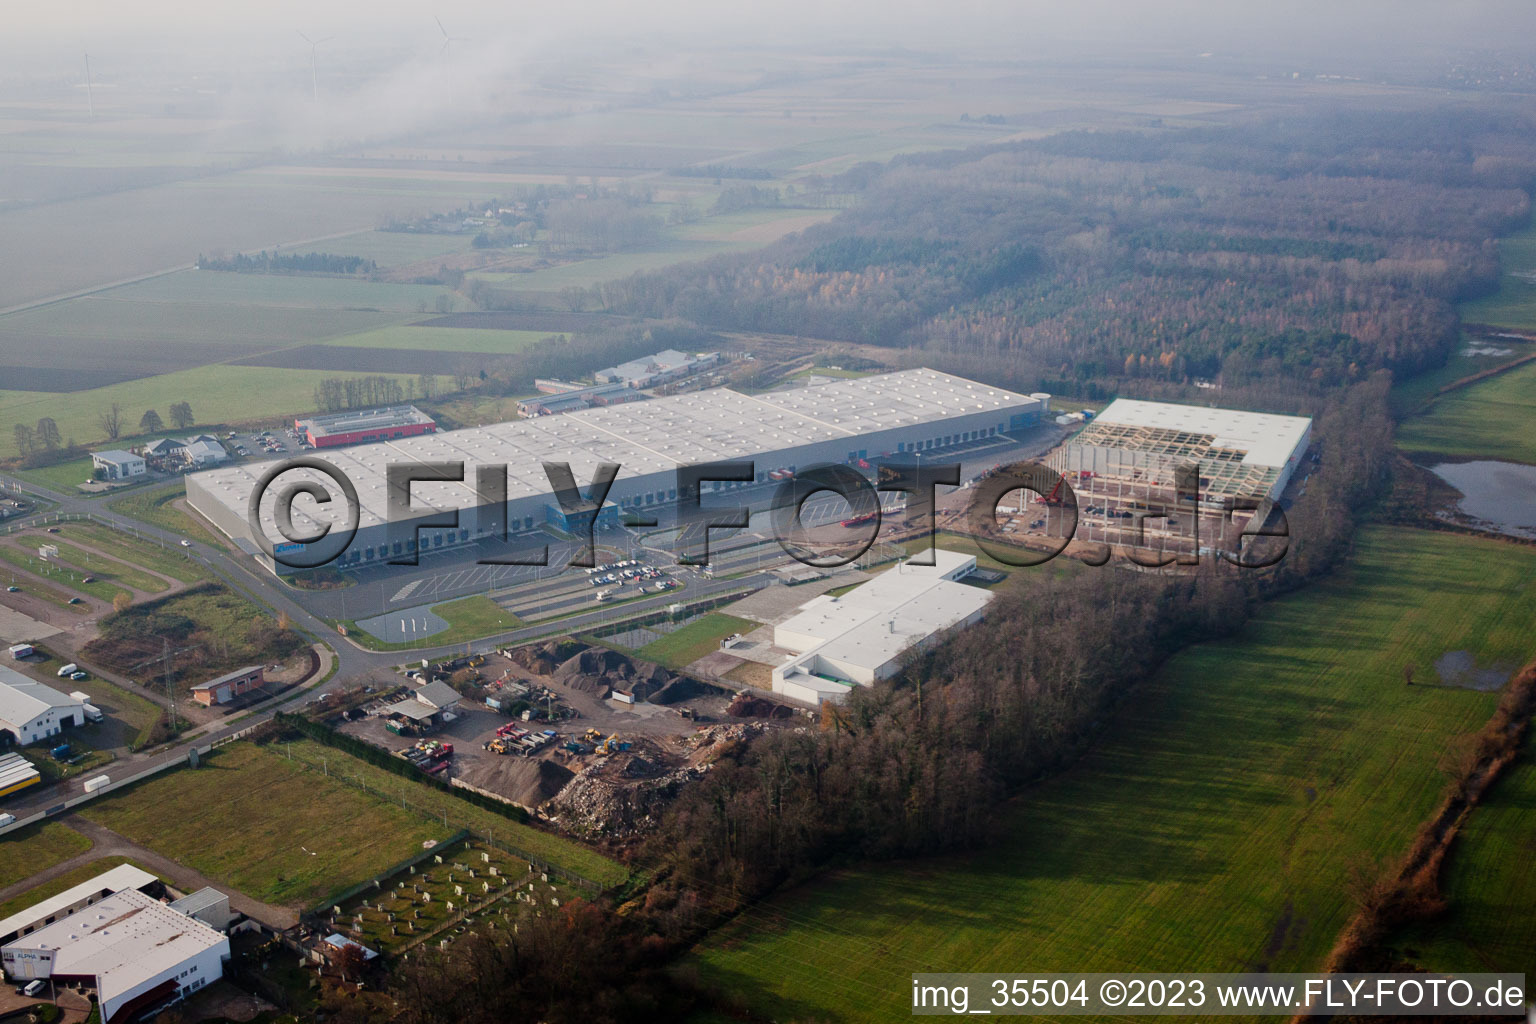 Vue aérienne de Surface commerciale, Centre Logistique de Gazely 2ème phase de construction à le quartier Minderslachen in Kandel dans le département Rhénanie-Palatinat, Allemagne